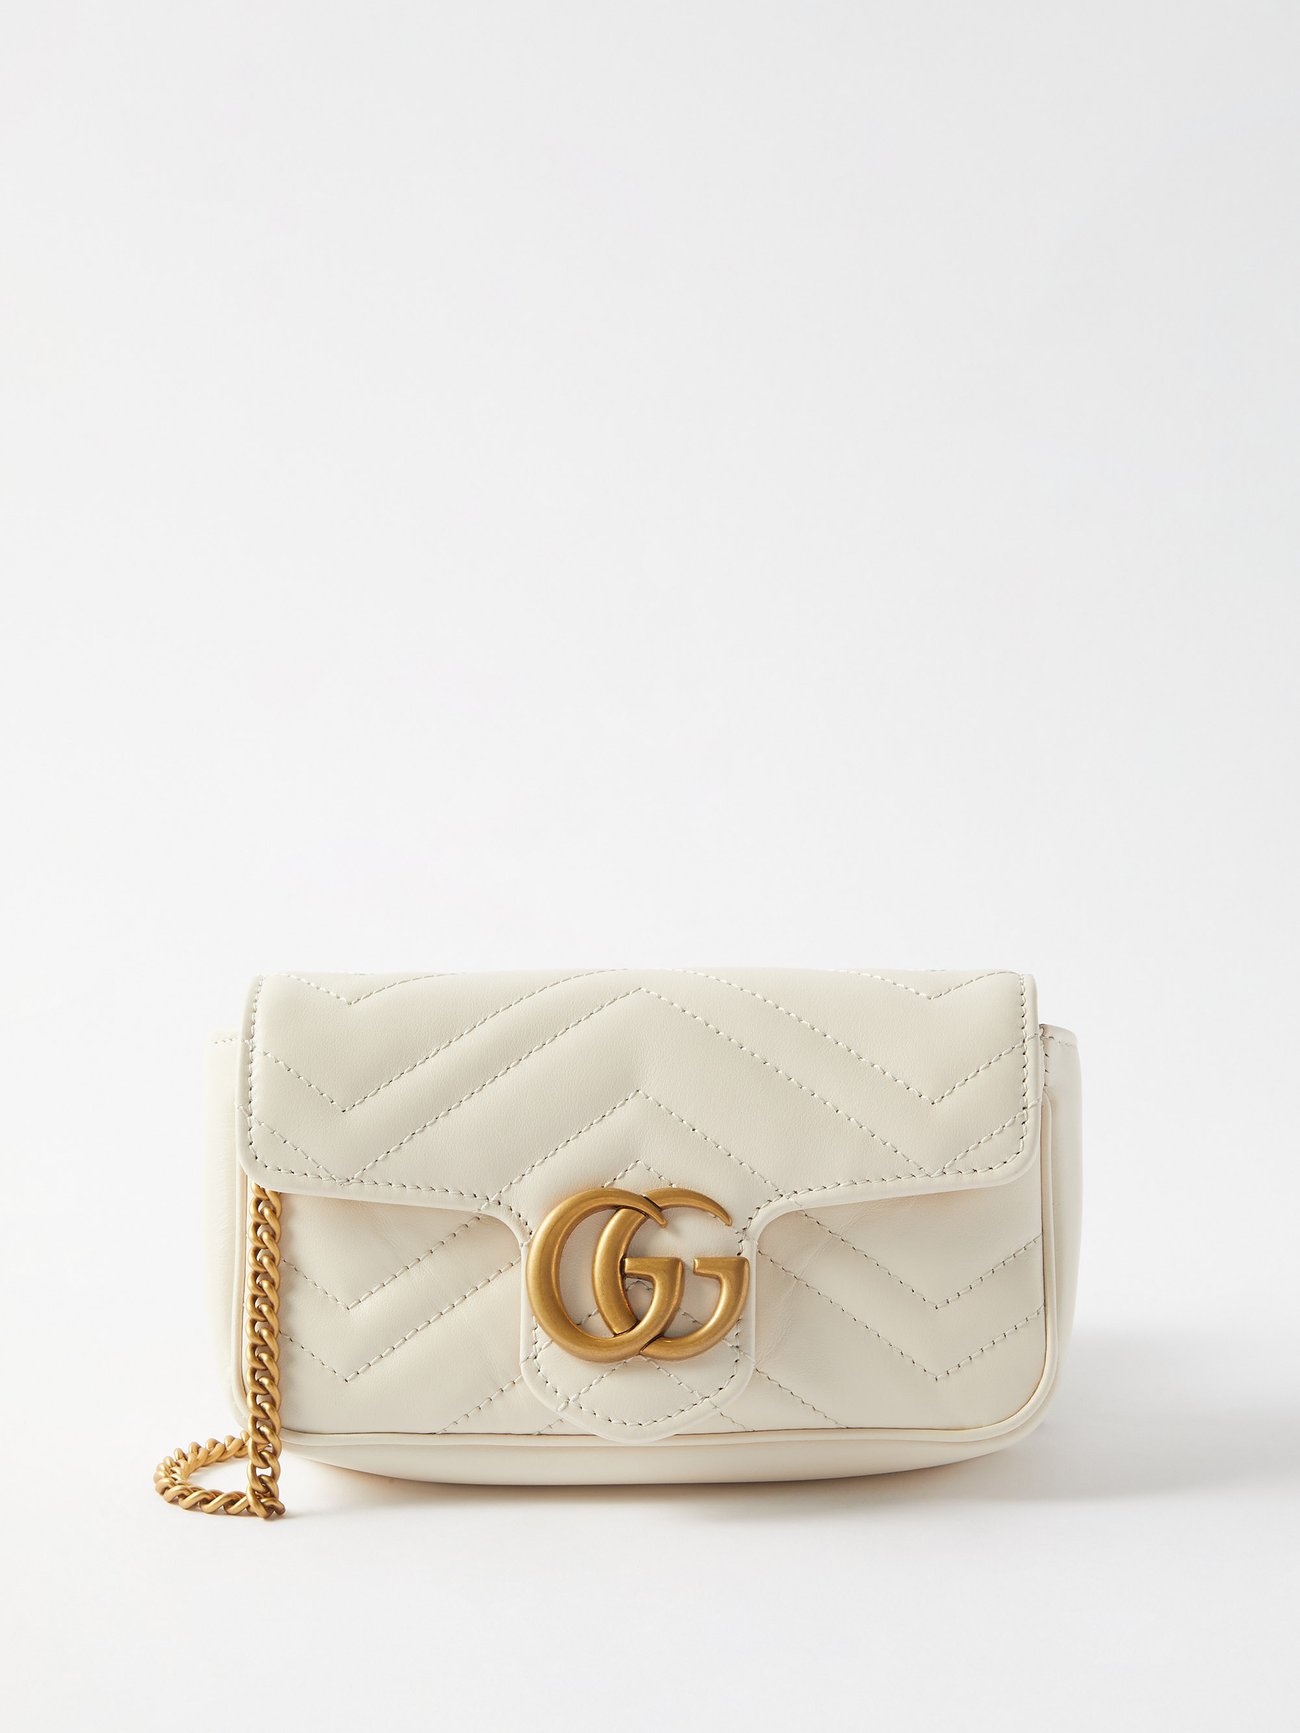 HealthdesignShops, Gucci GG Marmont Handbag 384288